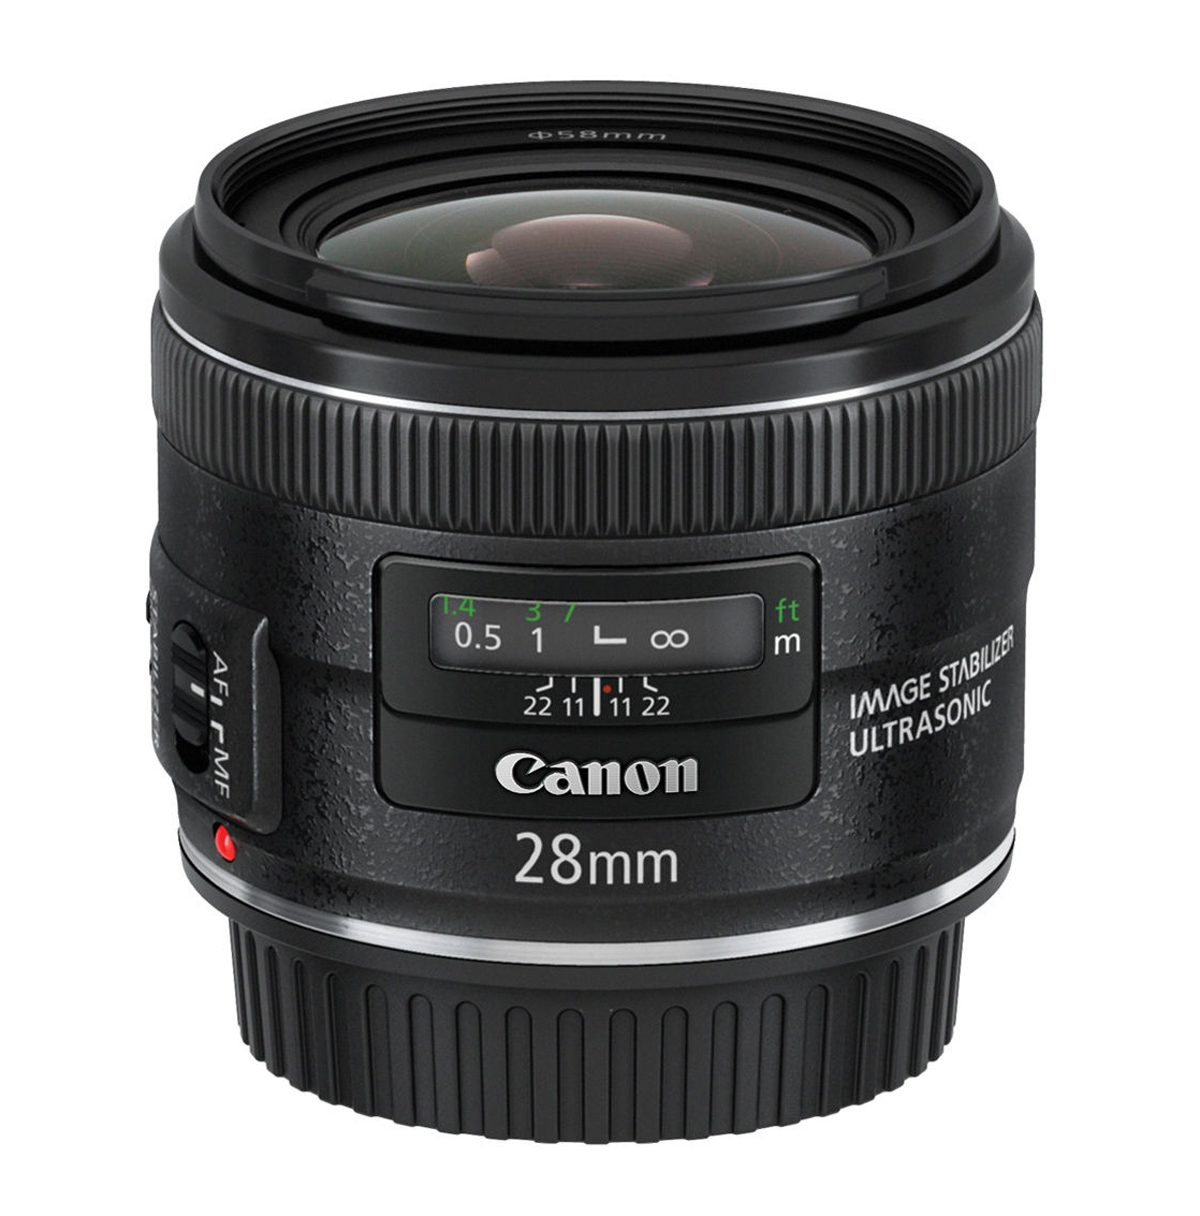 Canon EF 28mm f/2.8 Wide Angle IS USM AF Lens - 第 1/1 張圖片